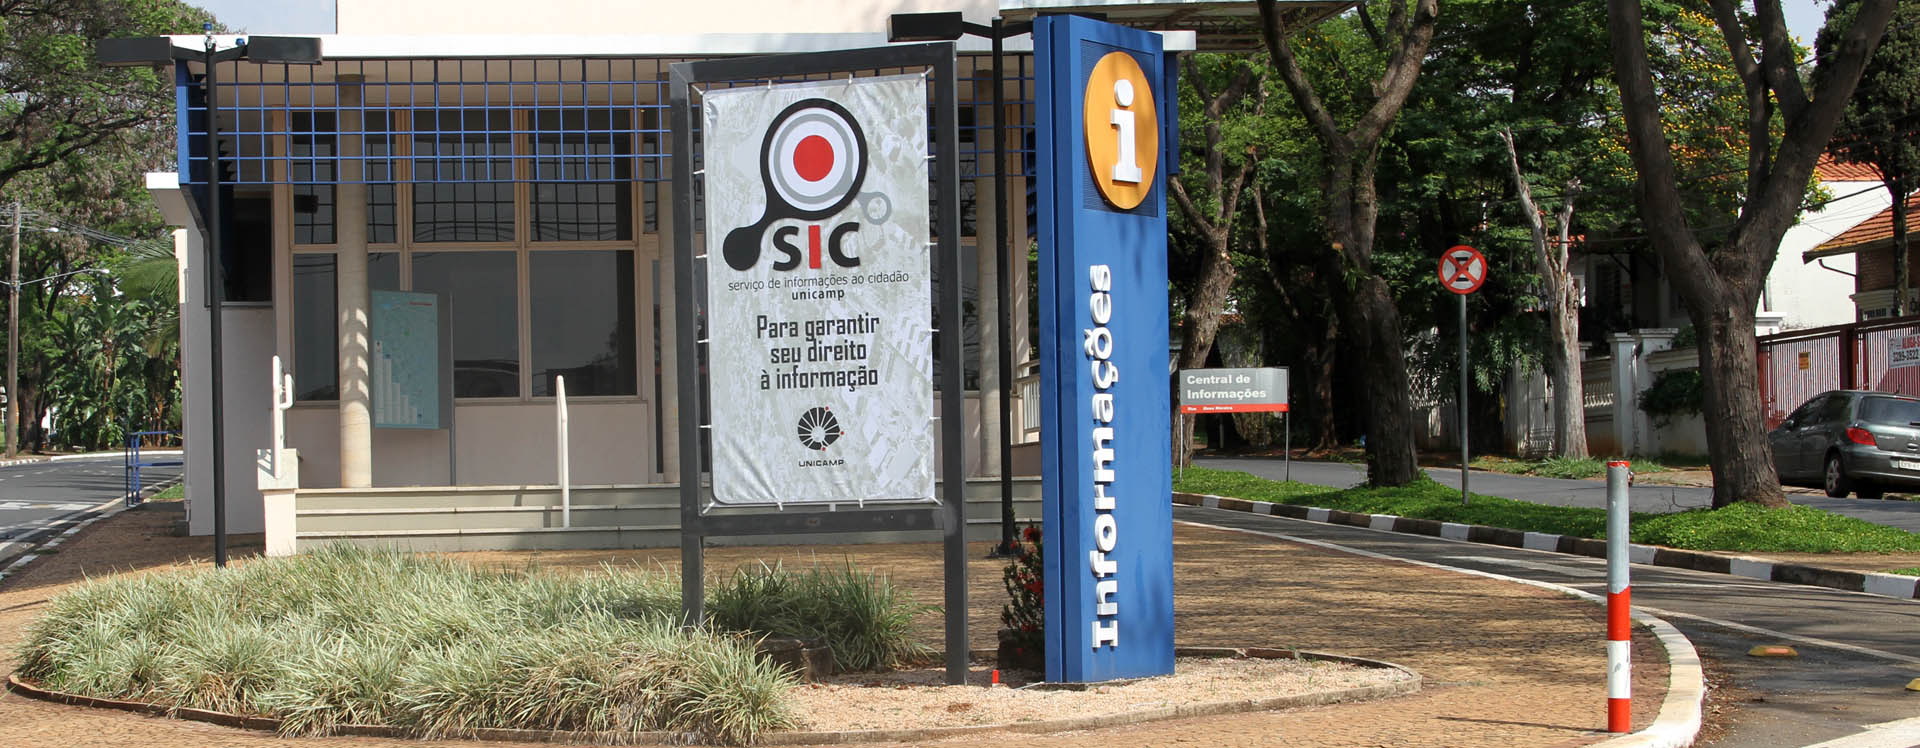 Foto da fachada do prédio onde se localiza o Sistema de Informação ao Cidadão (SIC)